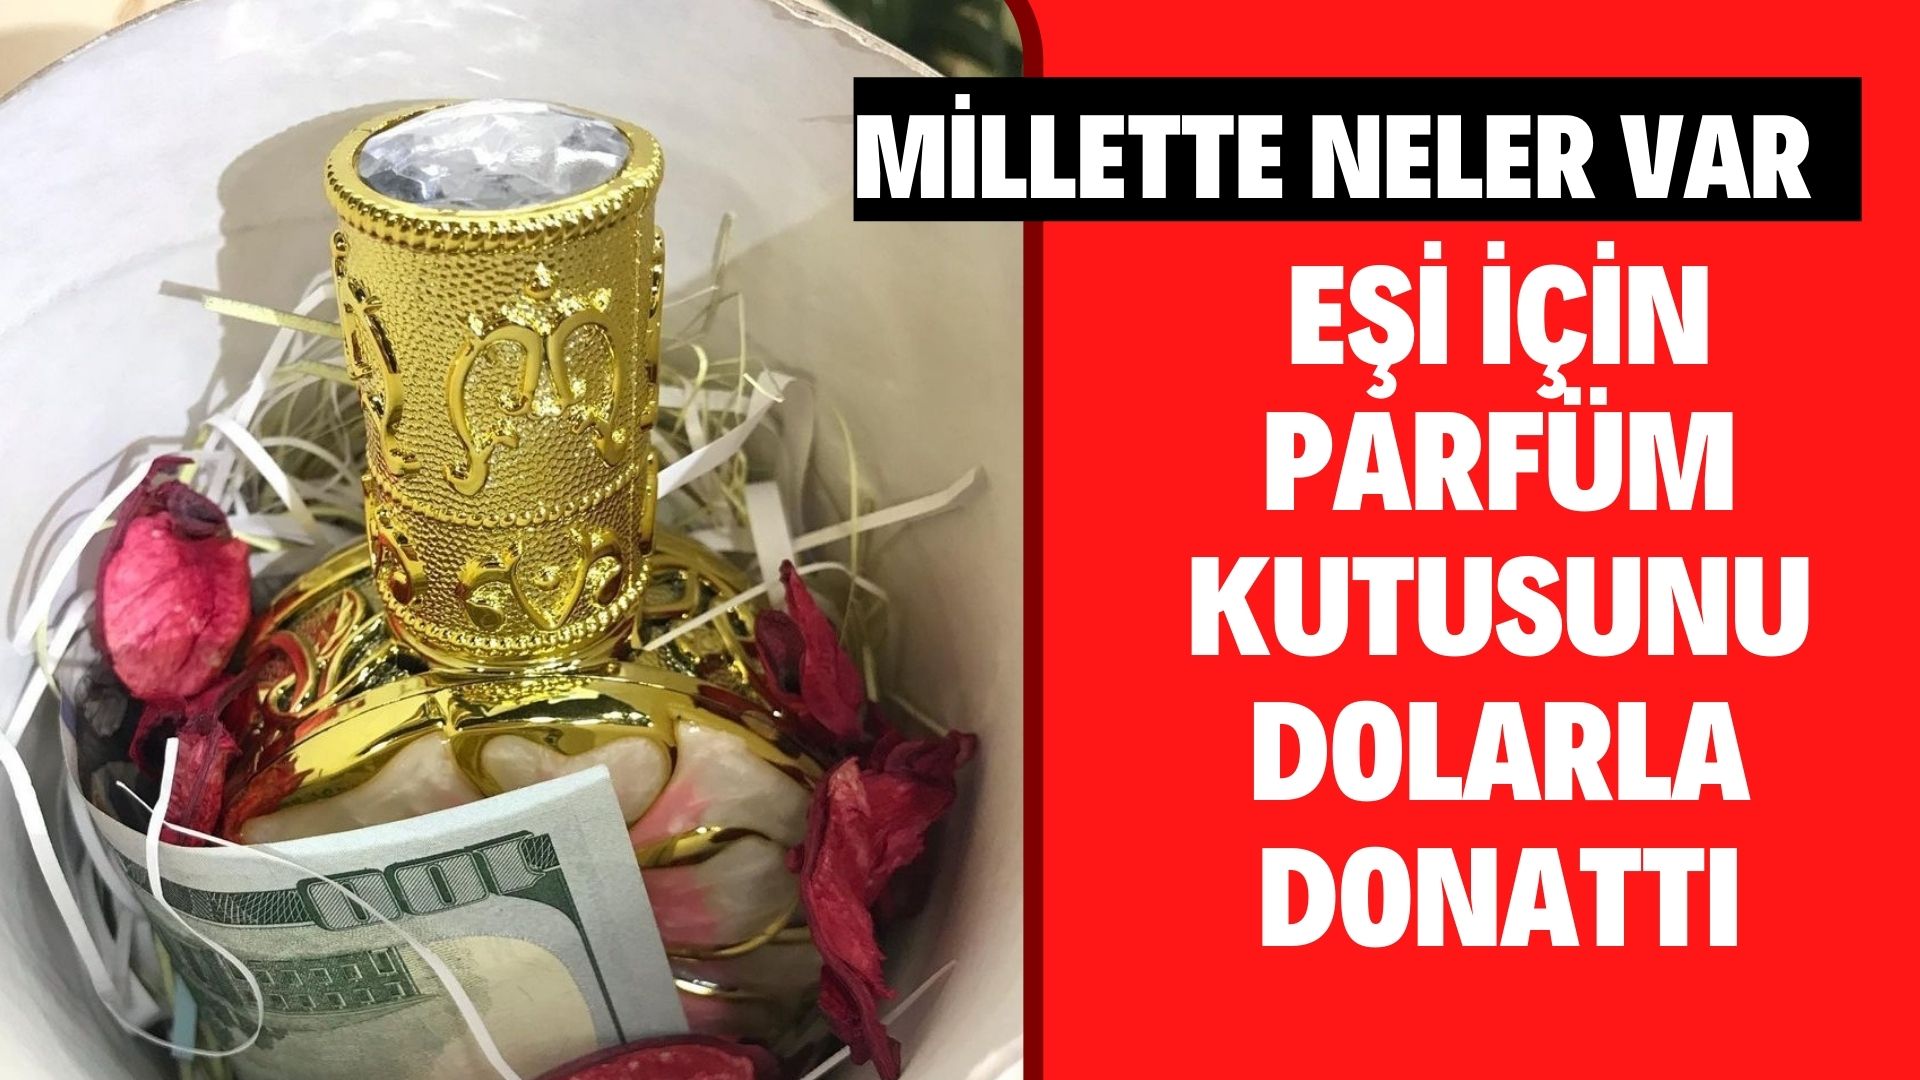 Kırşehir’de eşi için parfüm kutusunu dolarla donattı